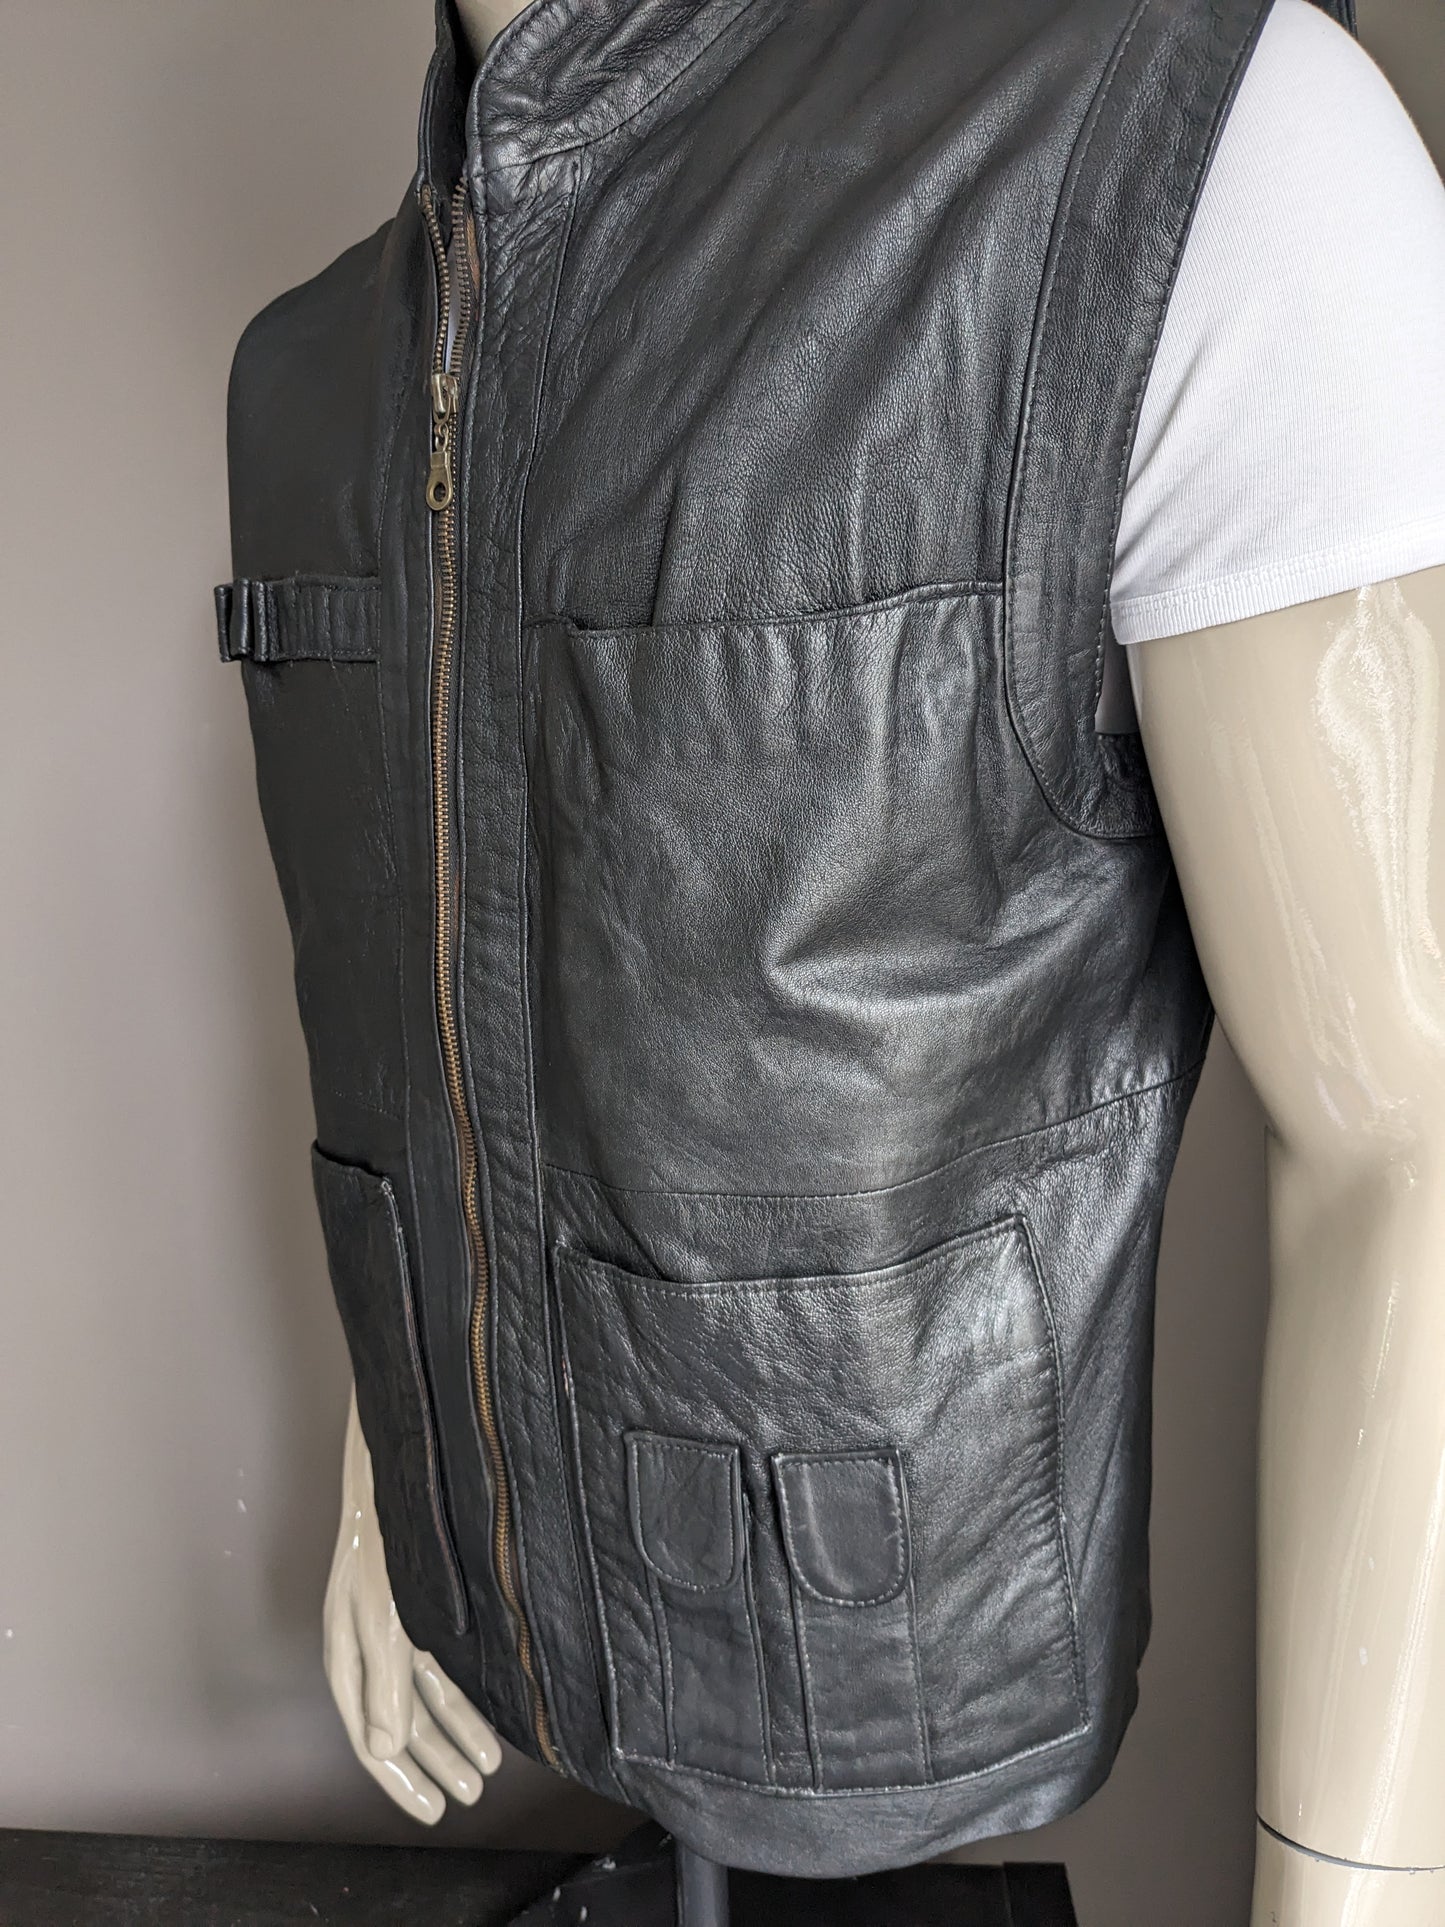 Central de cuerpo de cuero vintage de cuero con bolsas. Color negro. Tamaño L. 1 bolsillo interior.